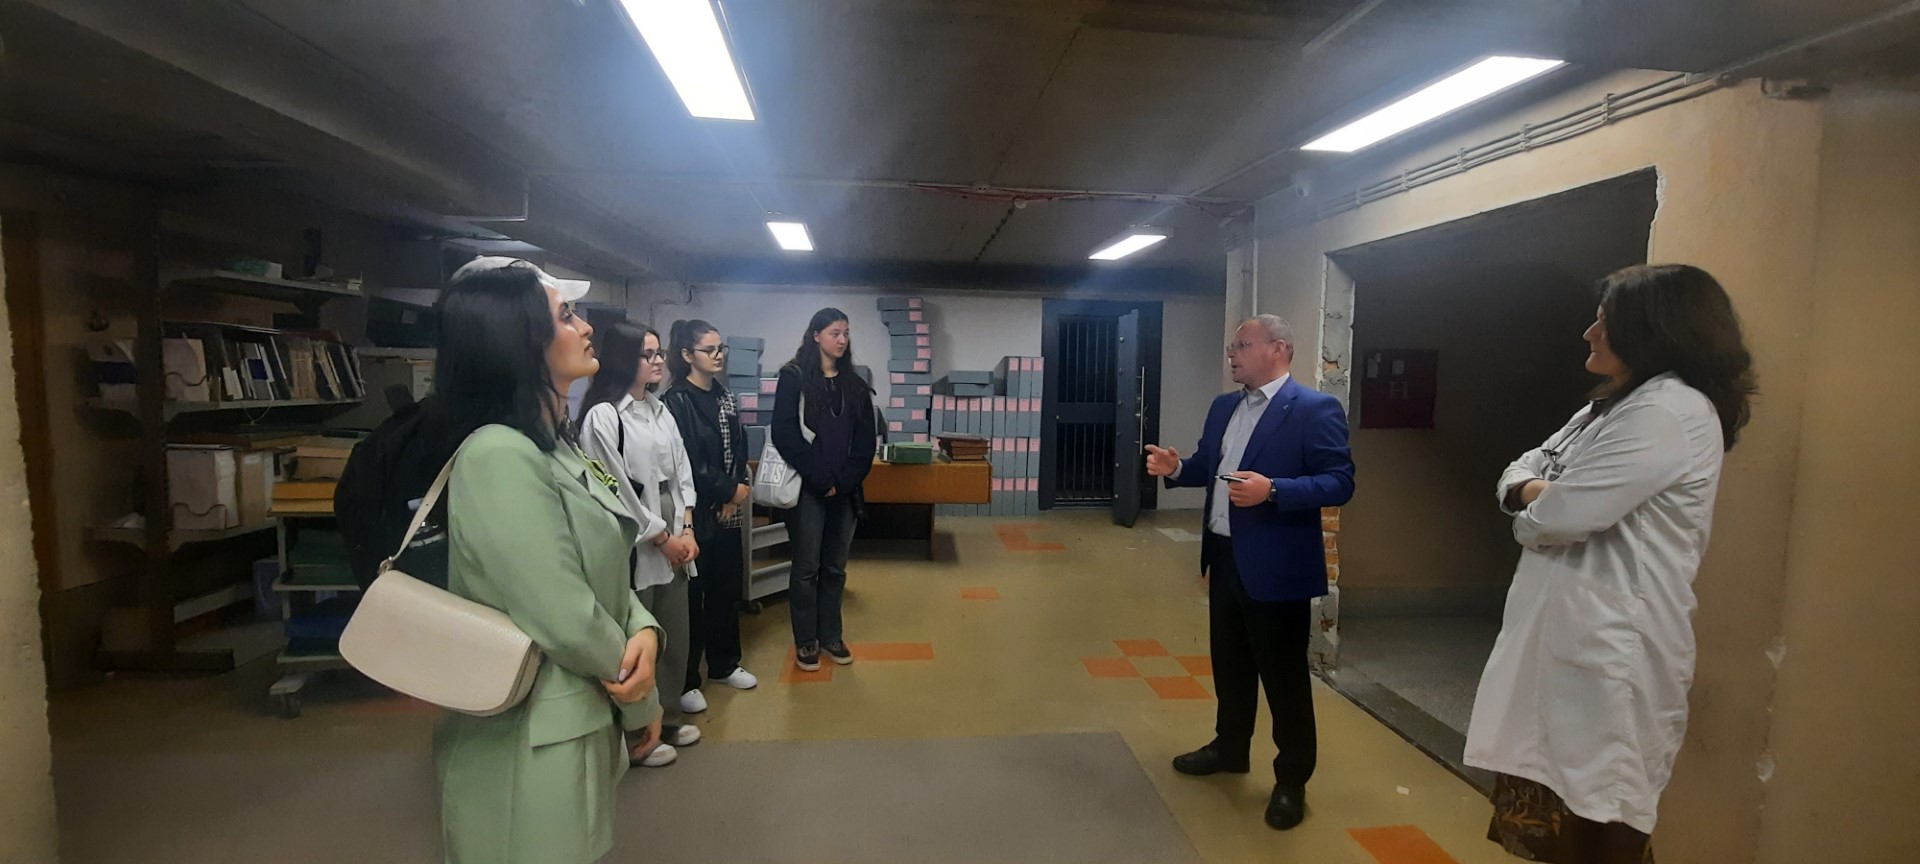 Studentët e UBT-së zhvilluan një vizitë studimore në Agjencinë Shtetërore të Arkivave të Kosovës dhe në Institutin e Historisë “Ali Hadri” në Prishtinë